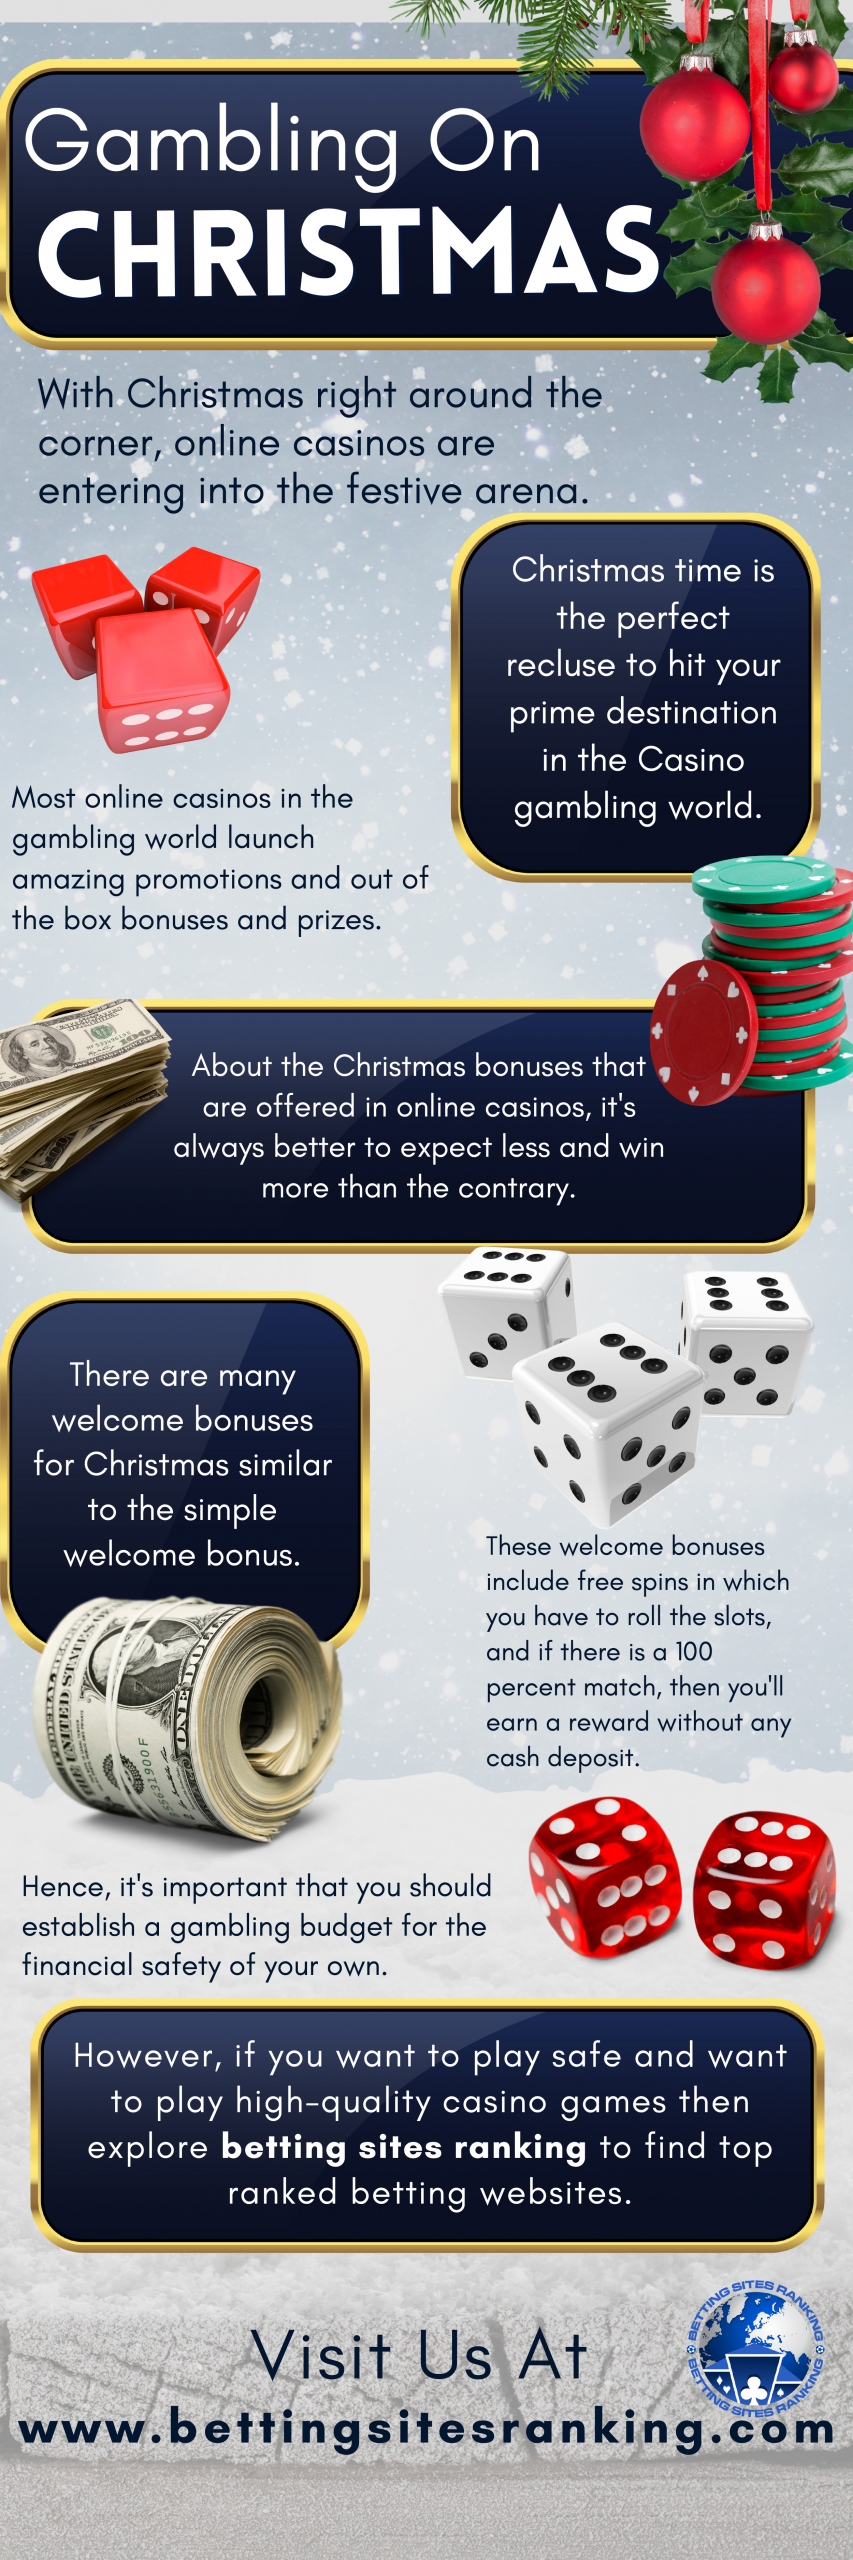 Gambling-On-Christmas-1